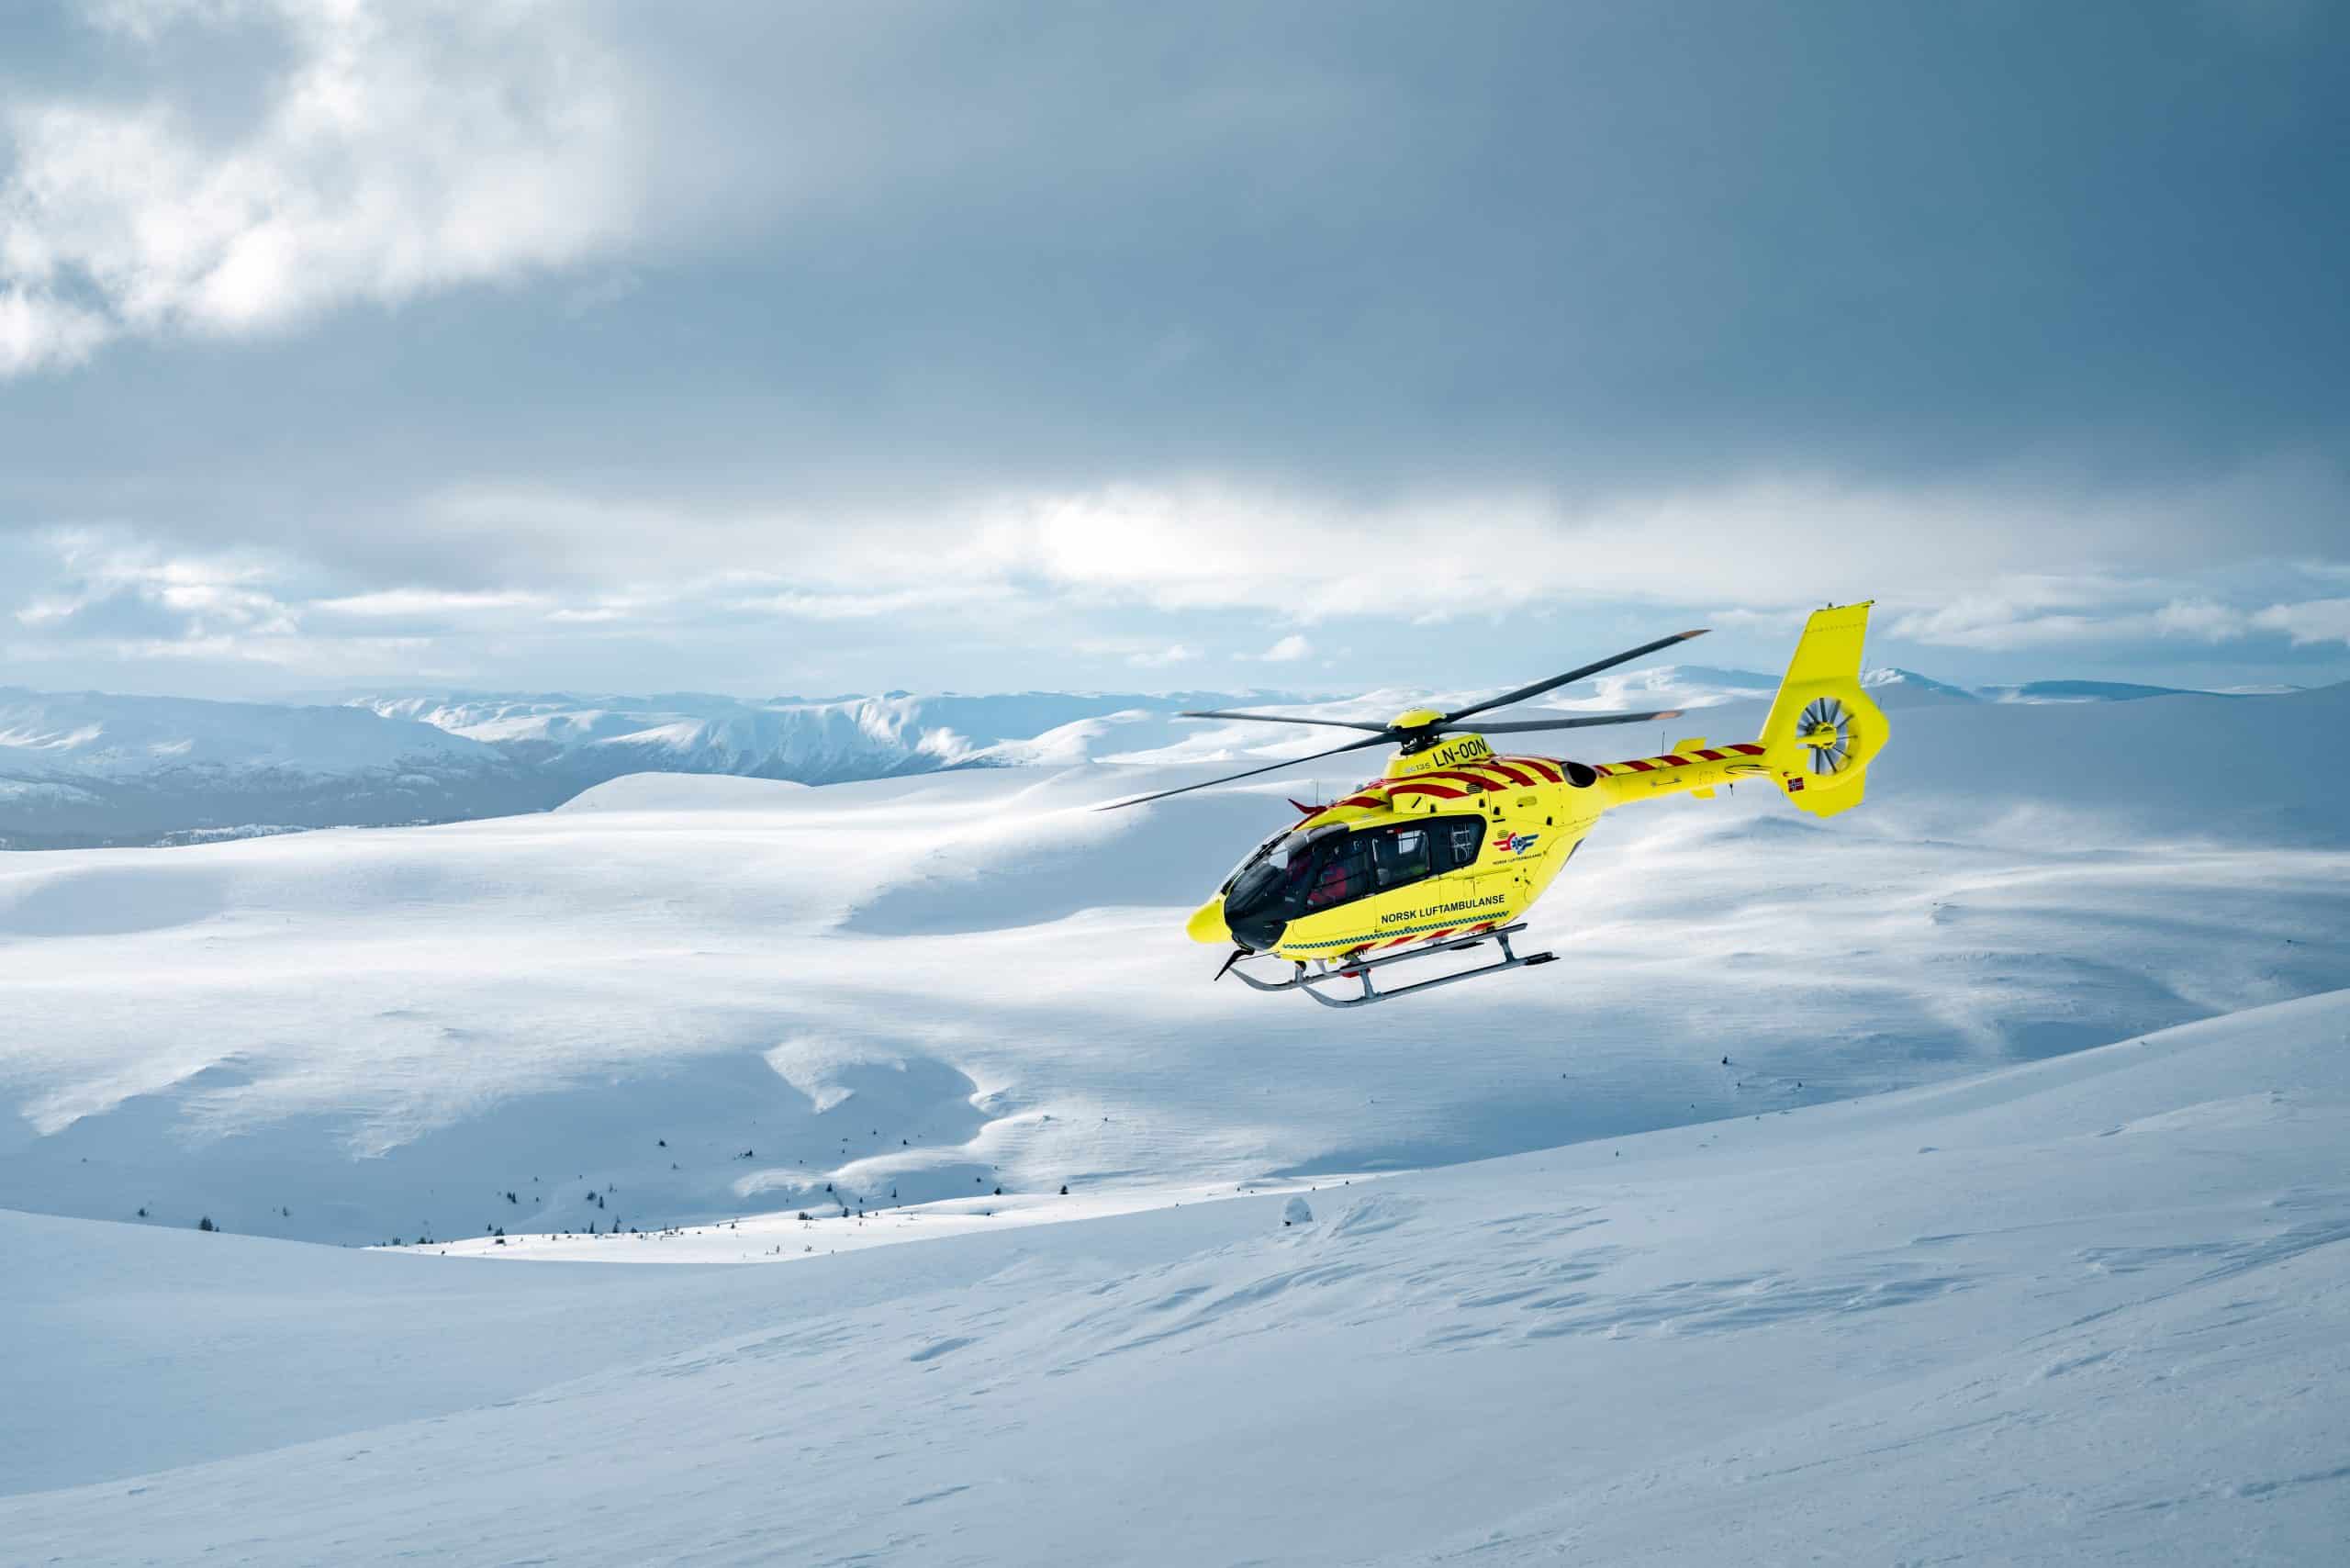 Gult legehelikopter flyr over snølandskap